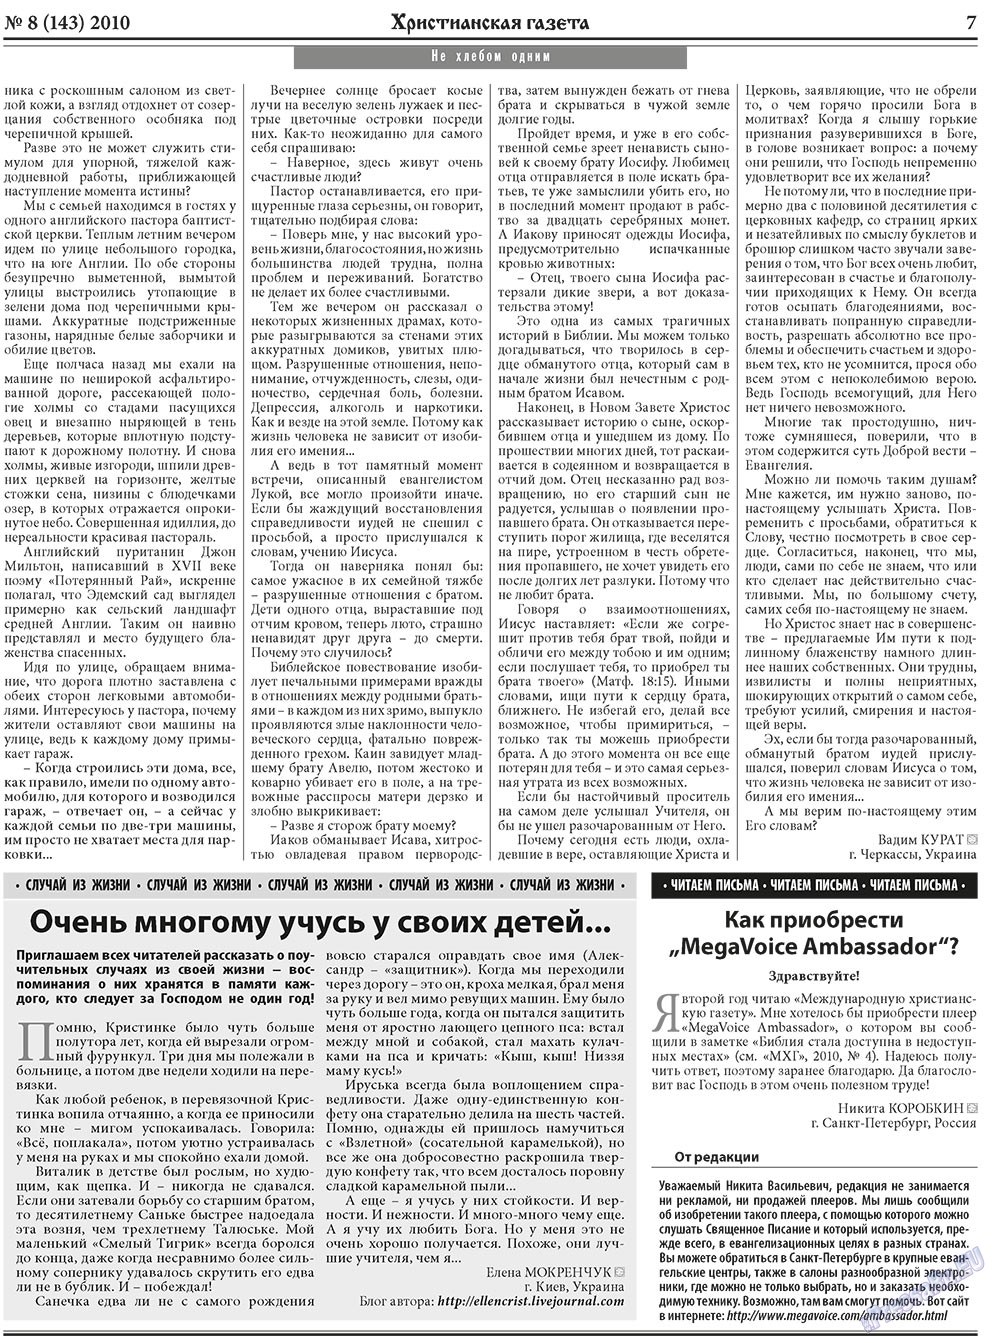 Христианская газета, газета. 2010 №8 стр.7